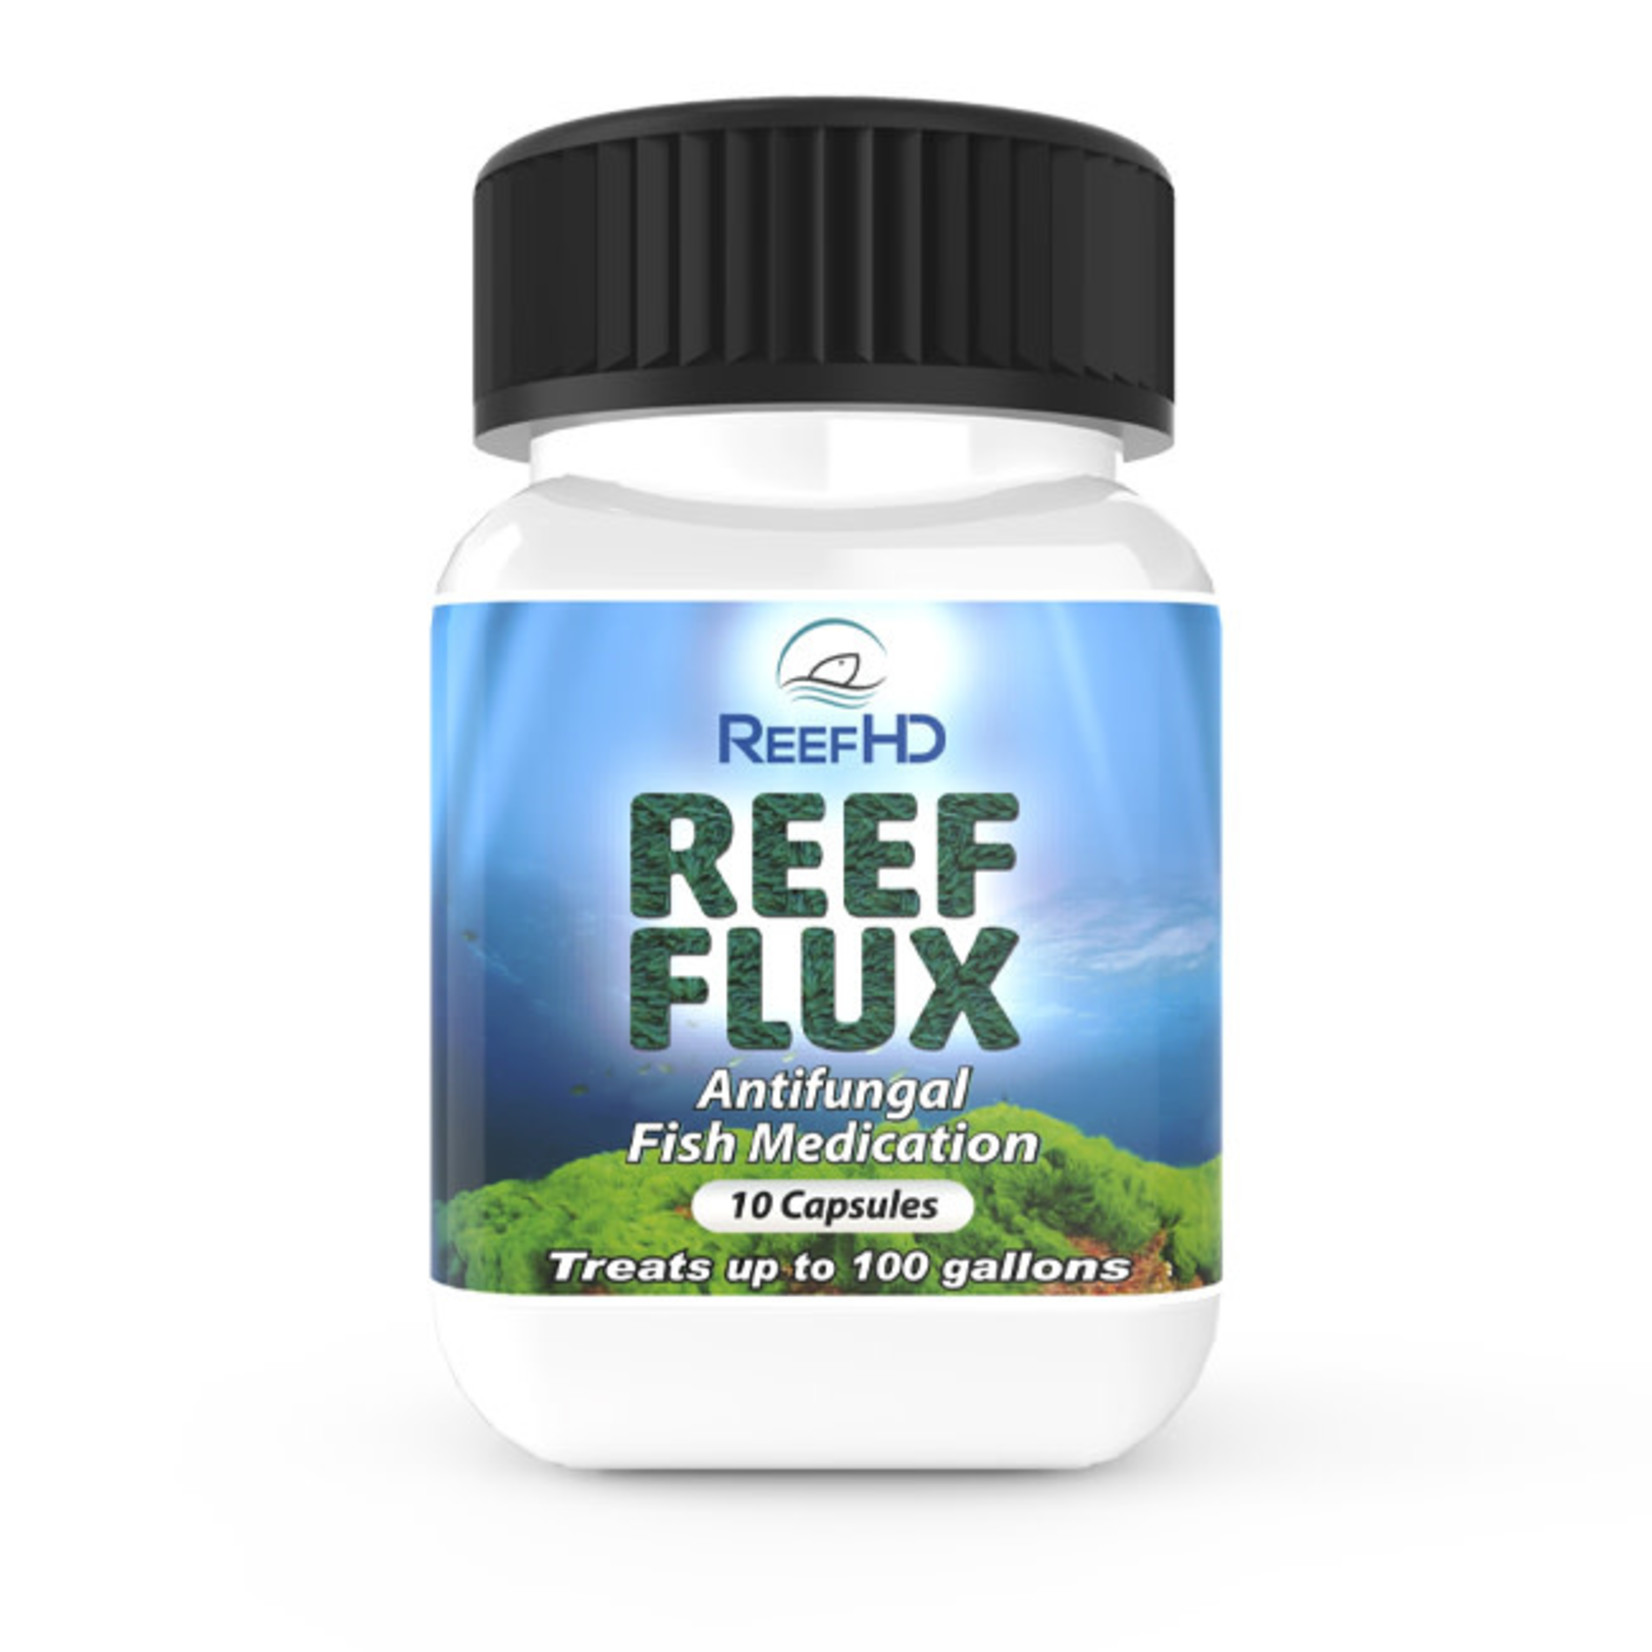 ReefHD ReefHD Reef Flux Fluconazole Medication 10 Capsules